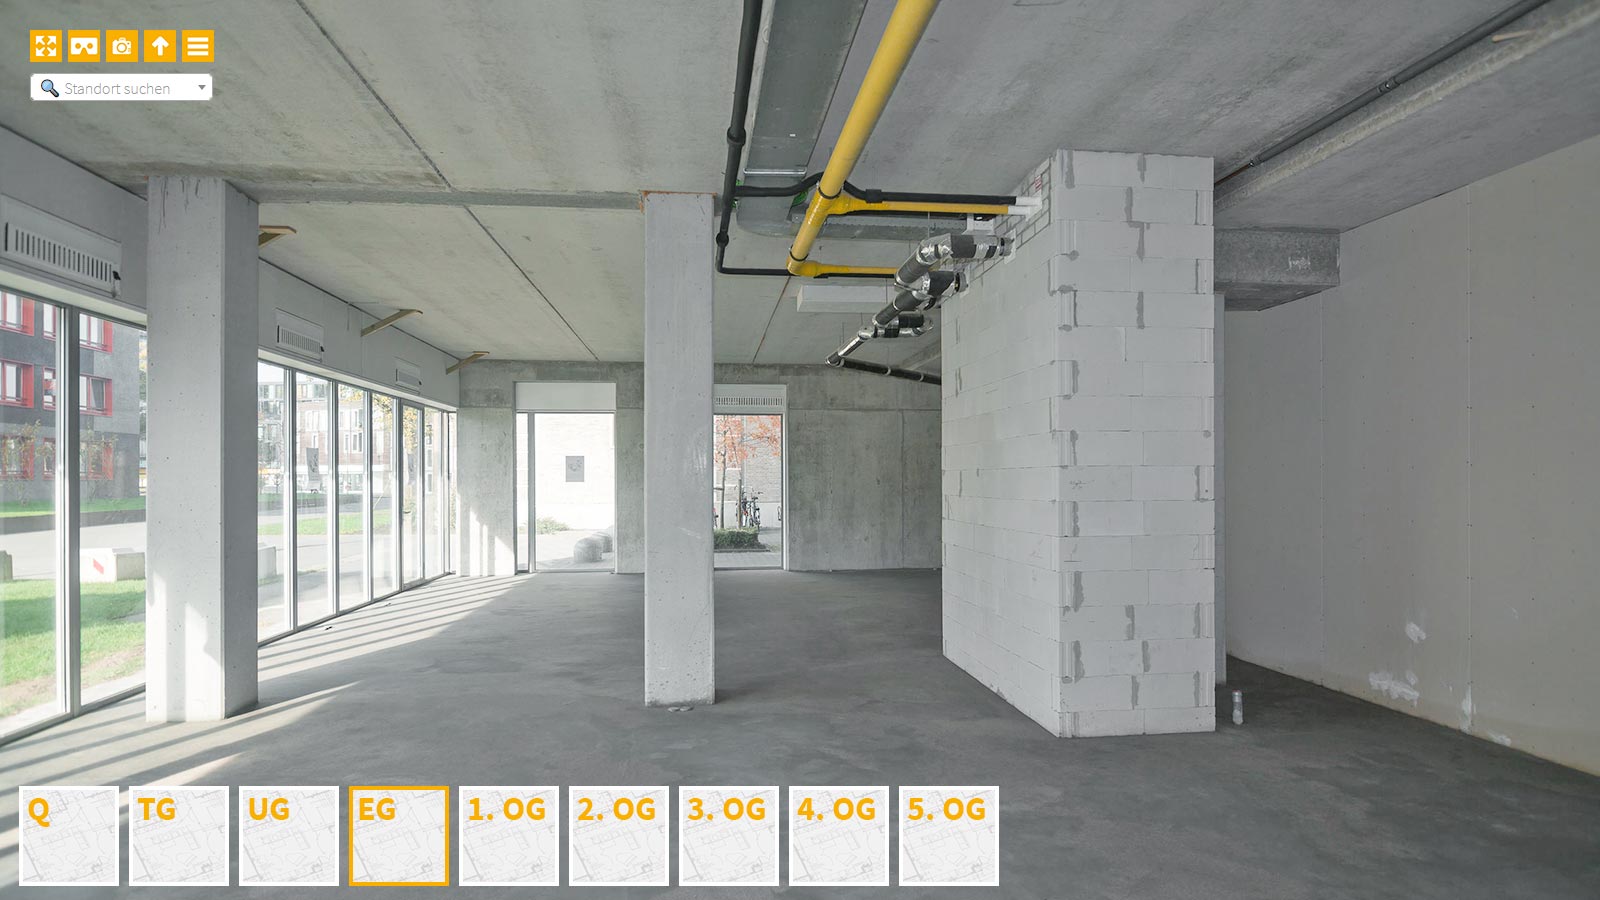 Baudokumentation 360 Grad bei gestörten Projekten in 


	


	


	


	


	


	


	


	


	


	Köln









, Bilddokumentation als virtueller Rundgang